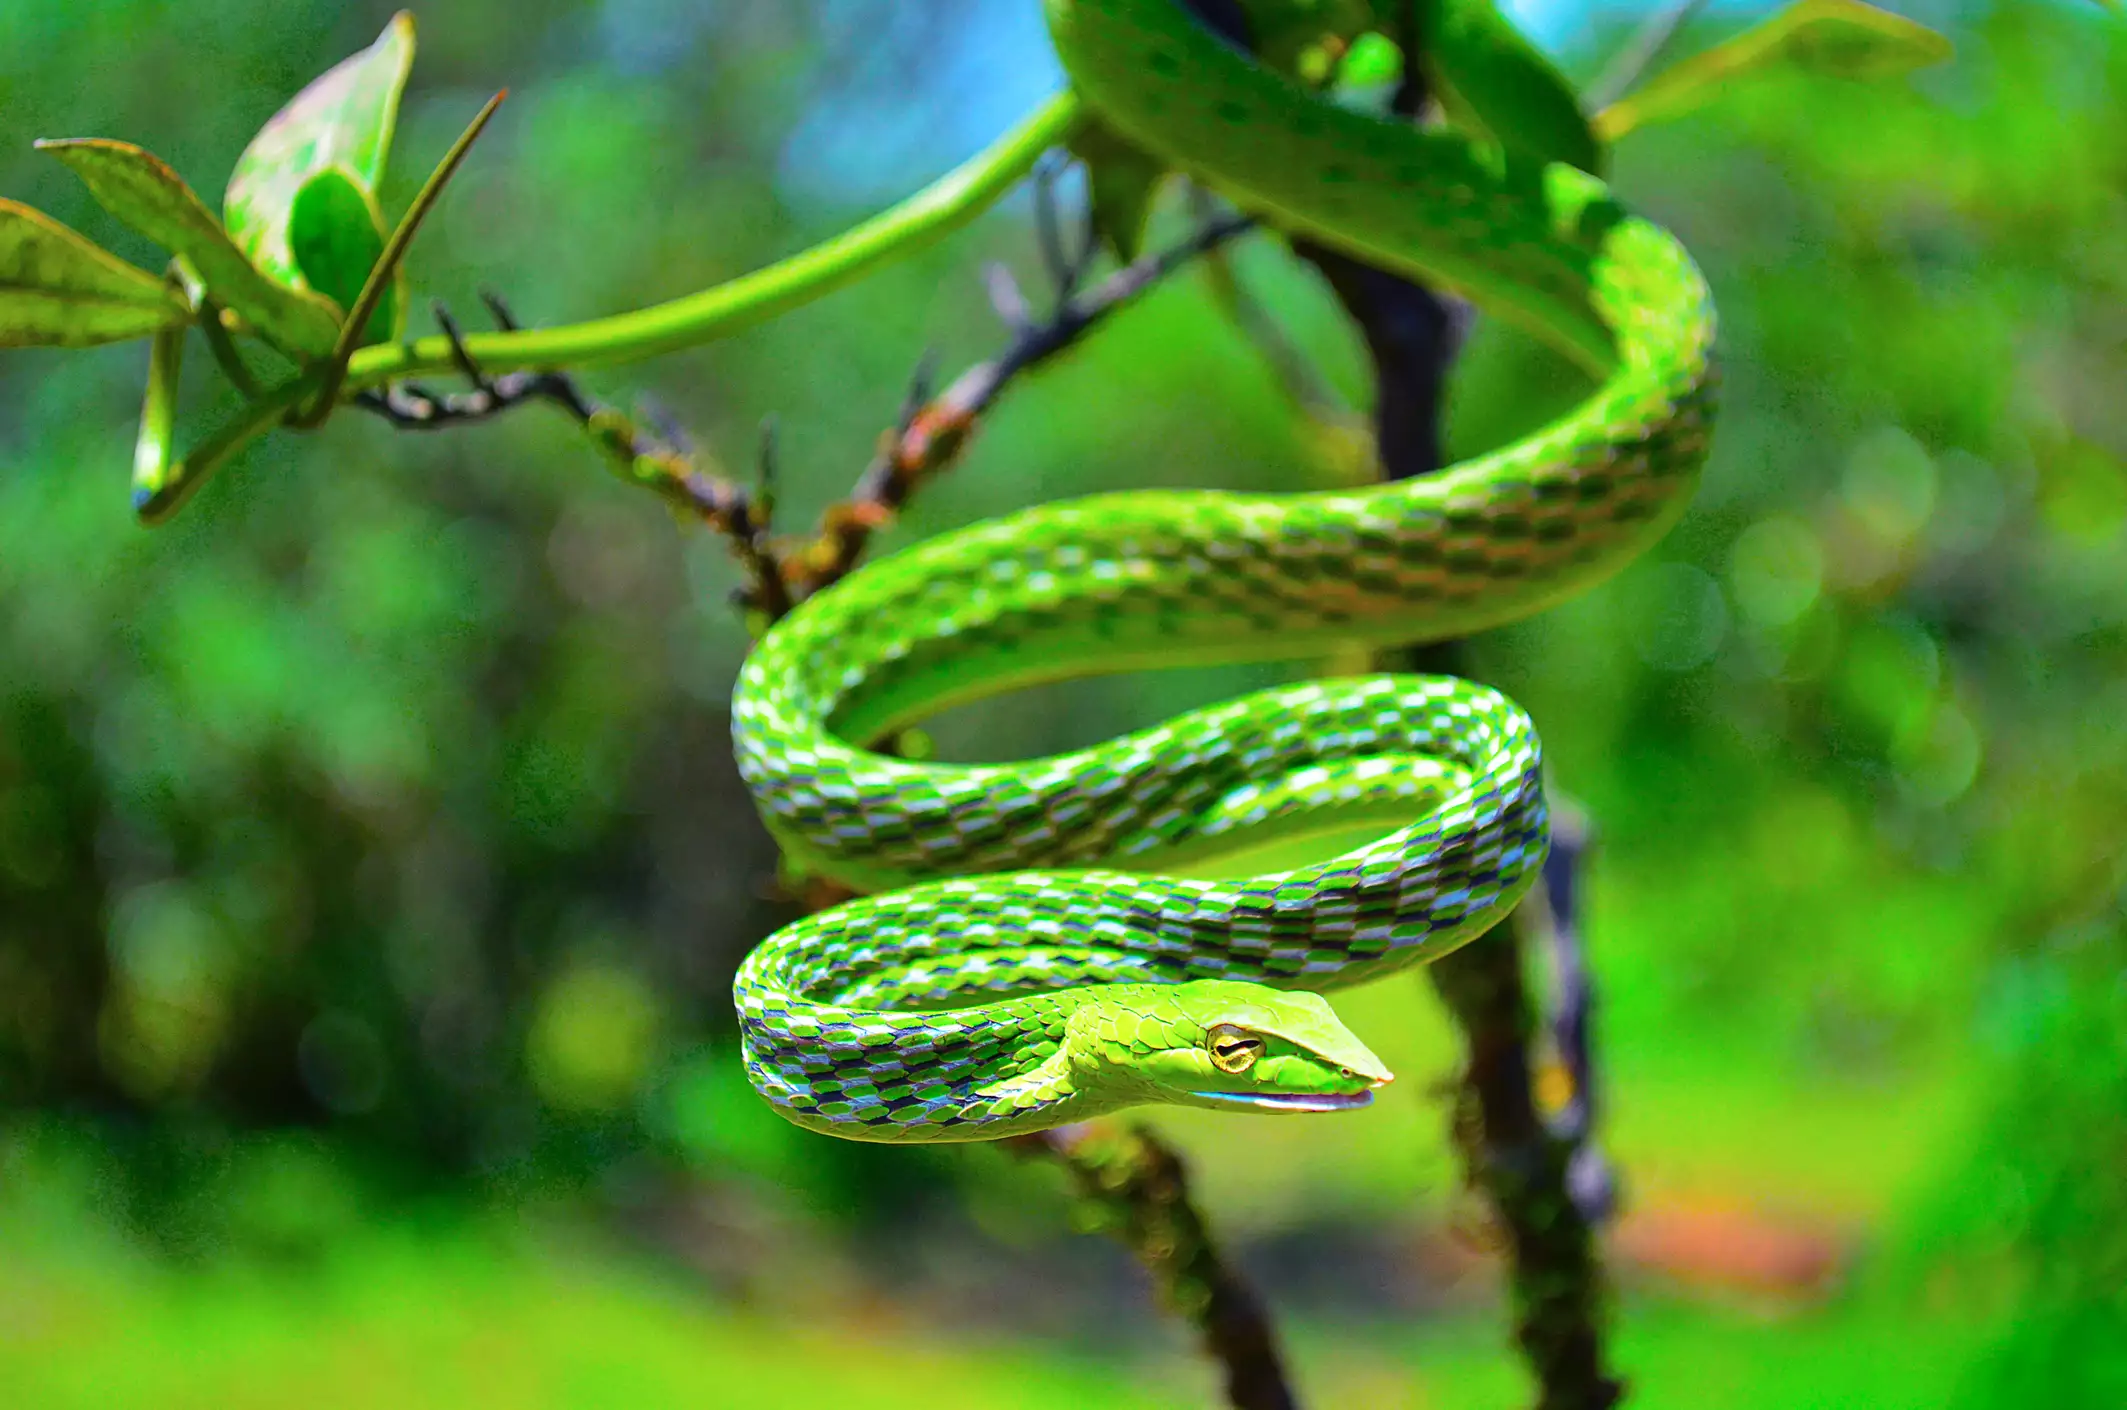 Зеленая змея в кривой форме, свисающая с лозы в лесу